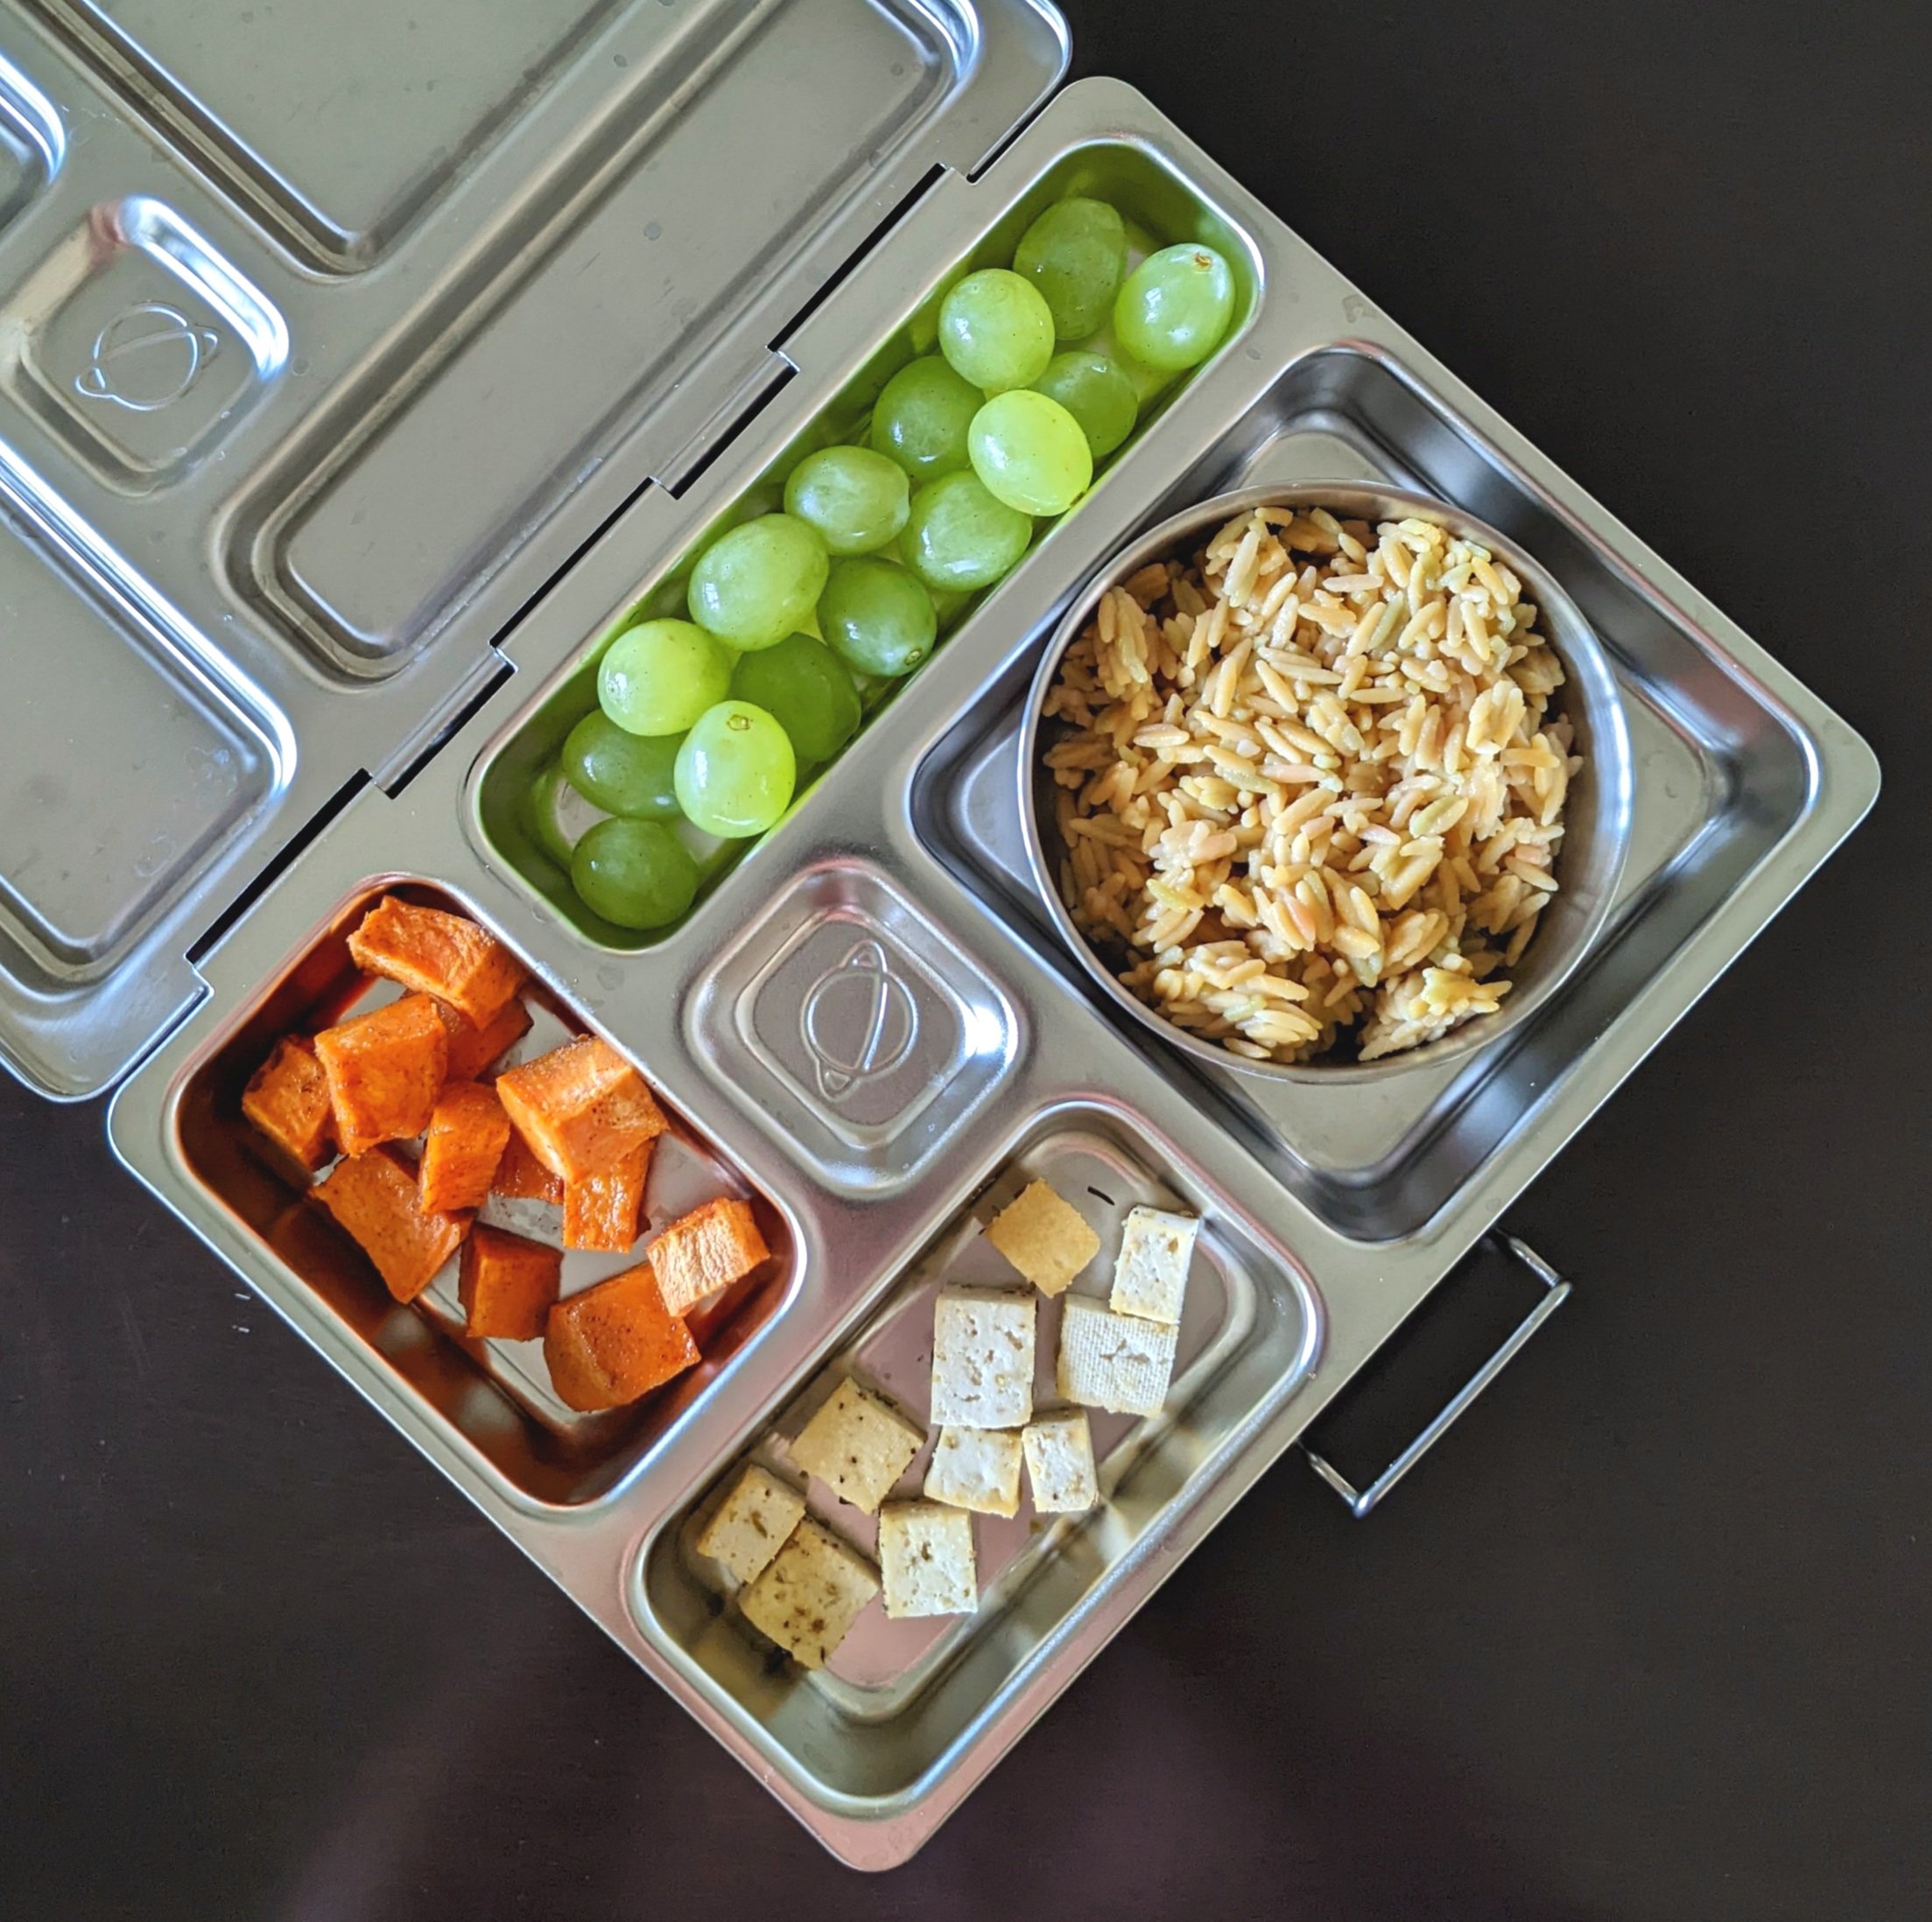 daycare lunch — Vegan Kids Nutrition Blog - Vegan Kids Nutrition